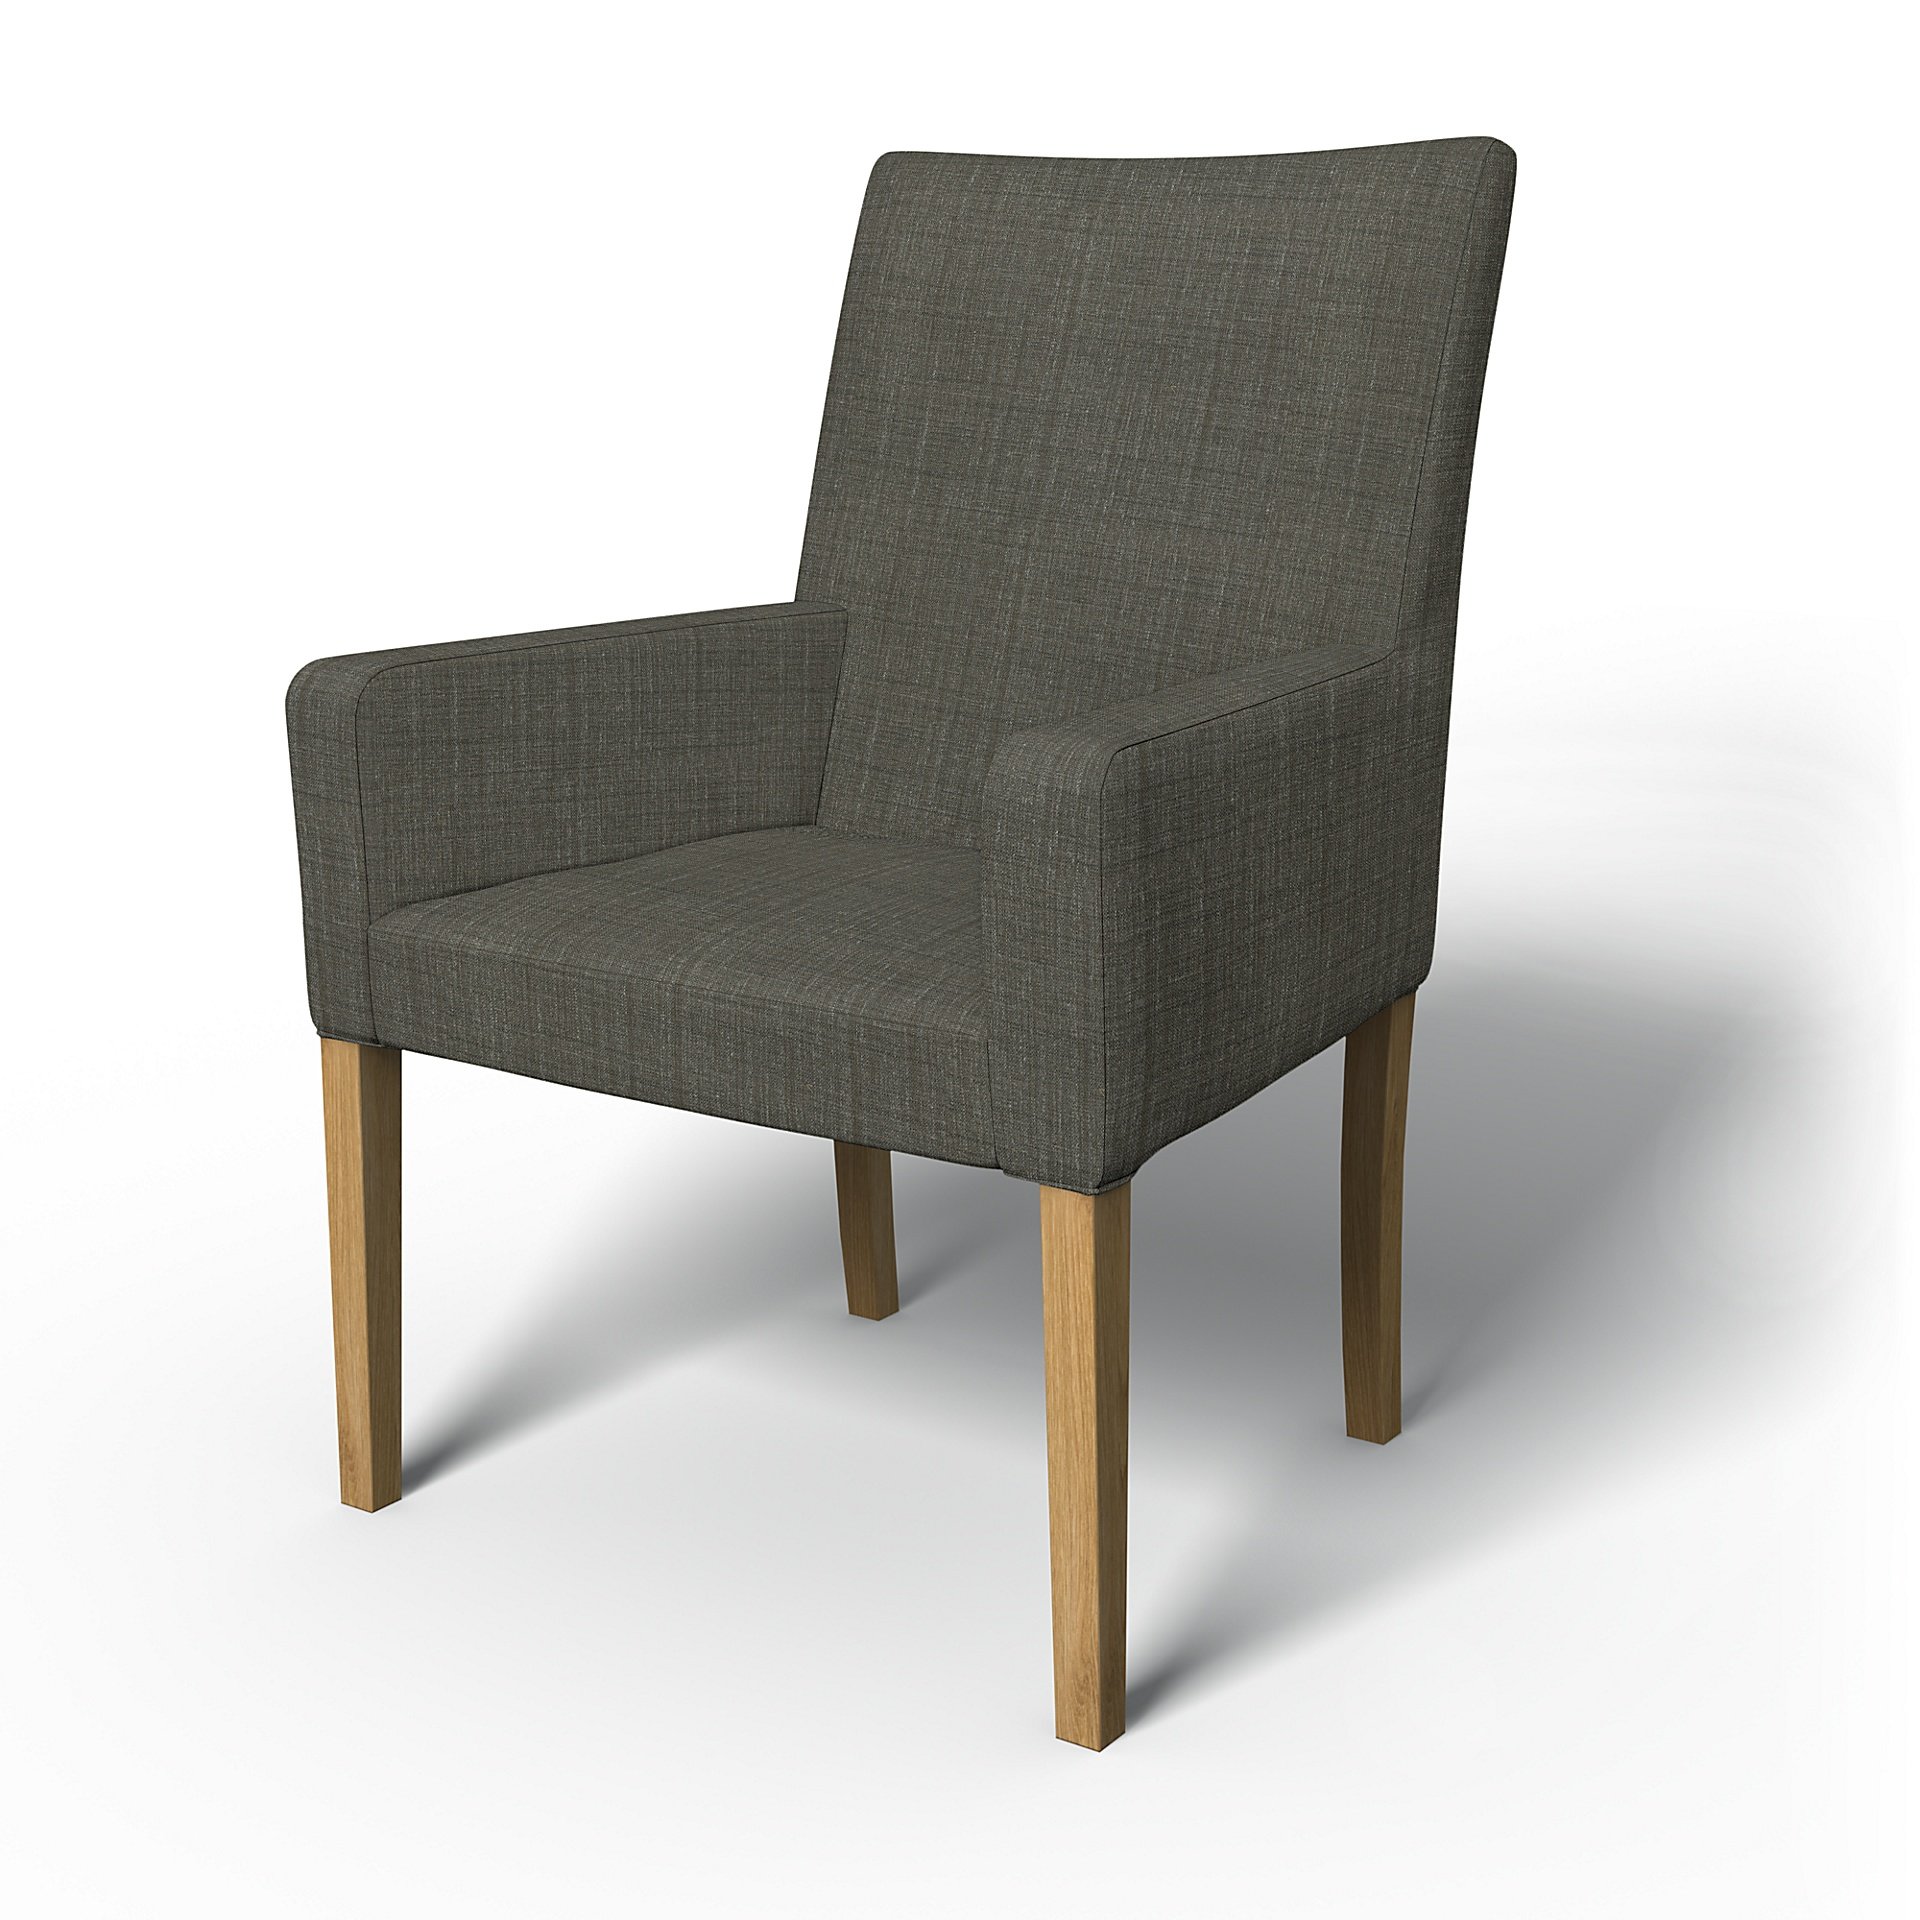 IKEA - Henriksdal, Chair cover w/ armrests, short, Mole Brown, Boucle & Texture - Bemz